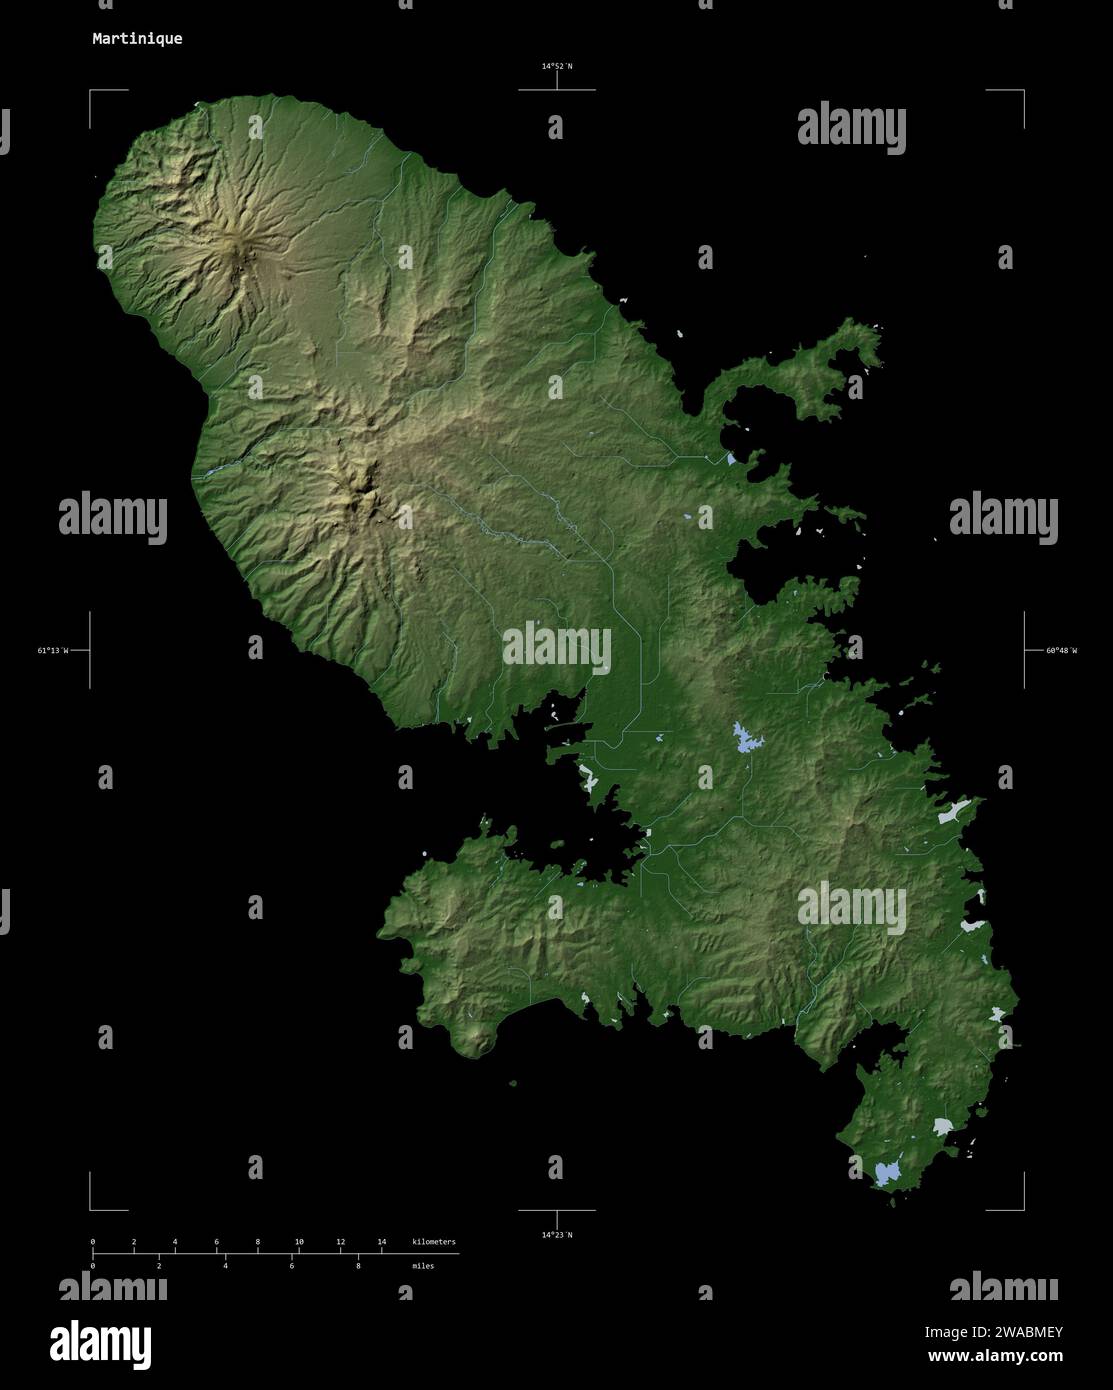 Forme d'une carte d'altitude en couleur pâle avec les lacs et rivières de la Martinique, avec échelle de distance et coordonnées de la frontière de la carte, isolé sur noir Banque D'Images